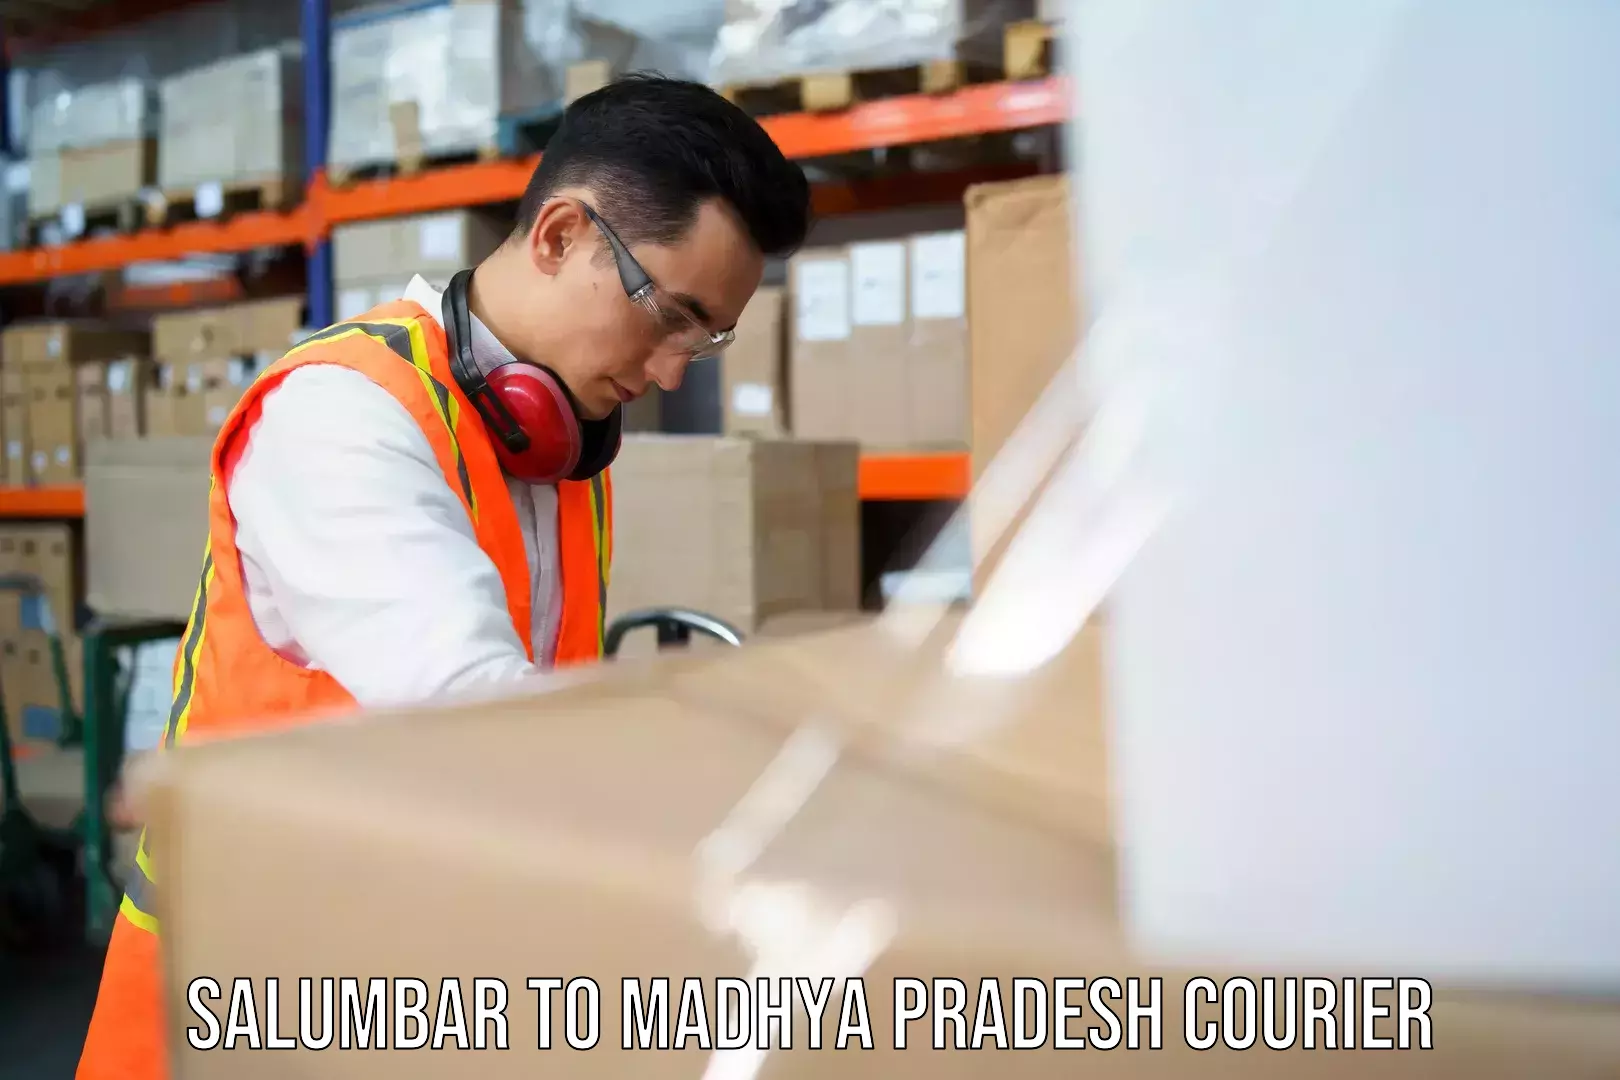 Customer-centric shipping Salumbar to Shujalpur